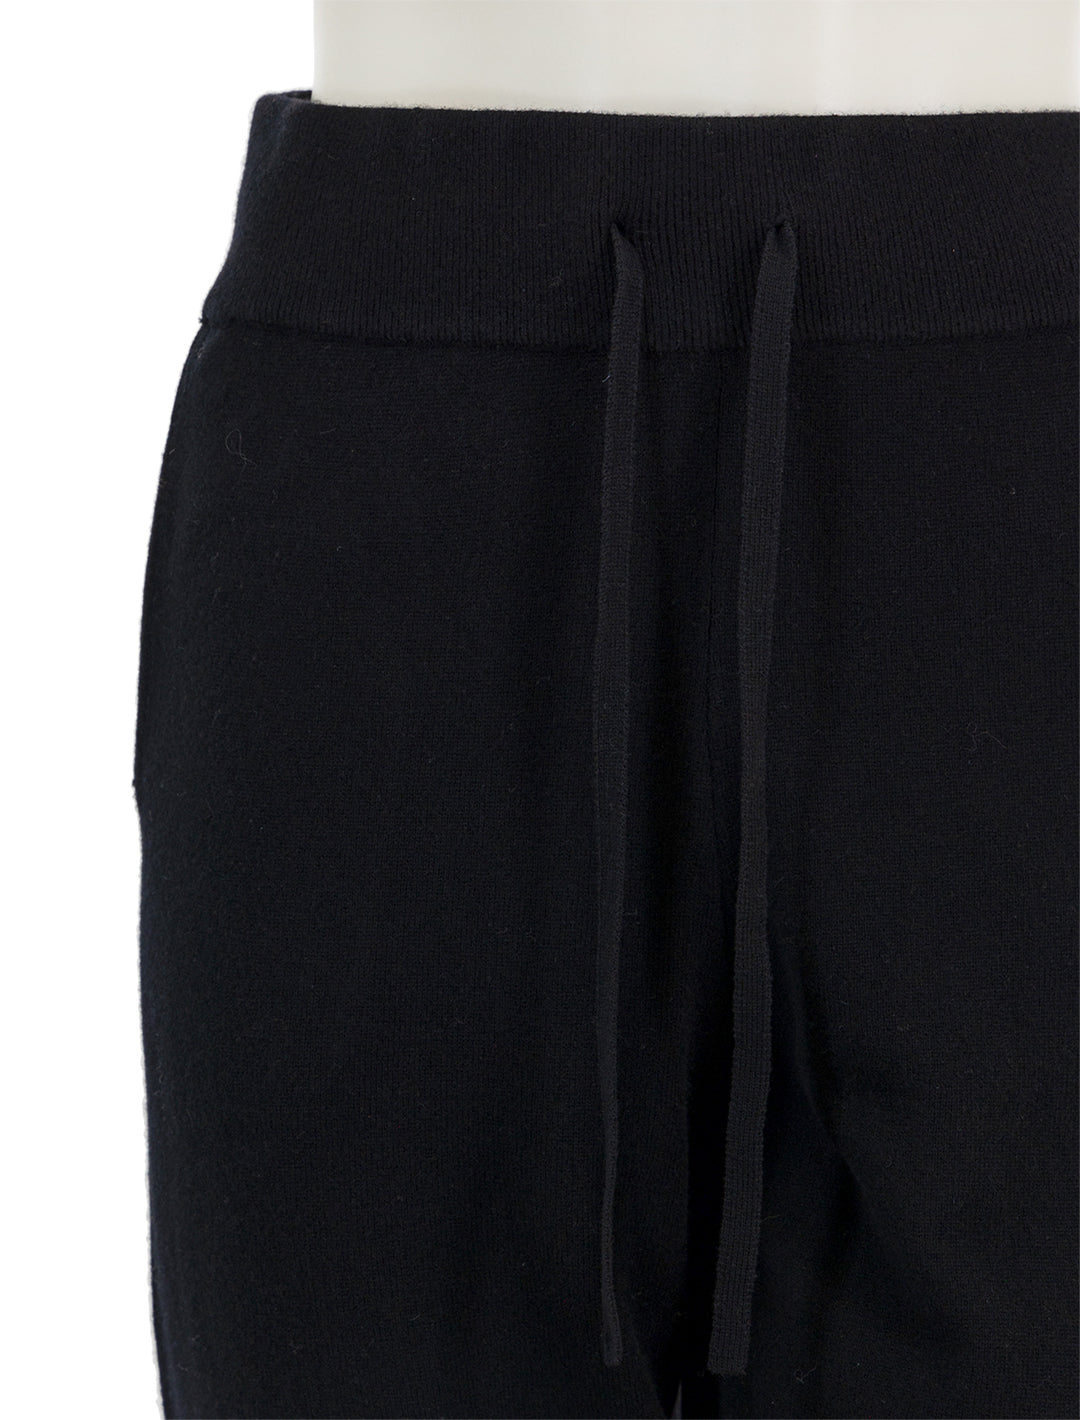 Close-up view of Vanessa bruno's berto pants in merino wool.